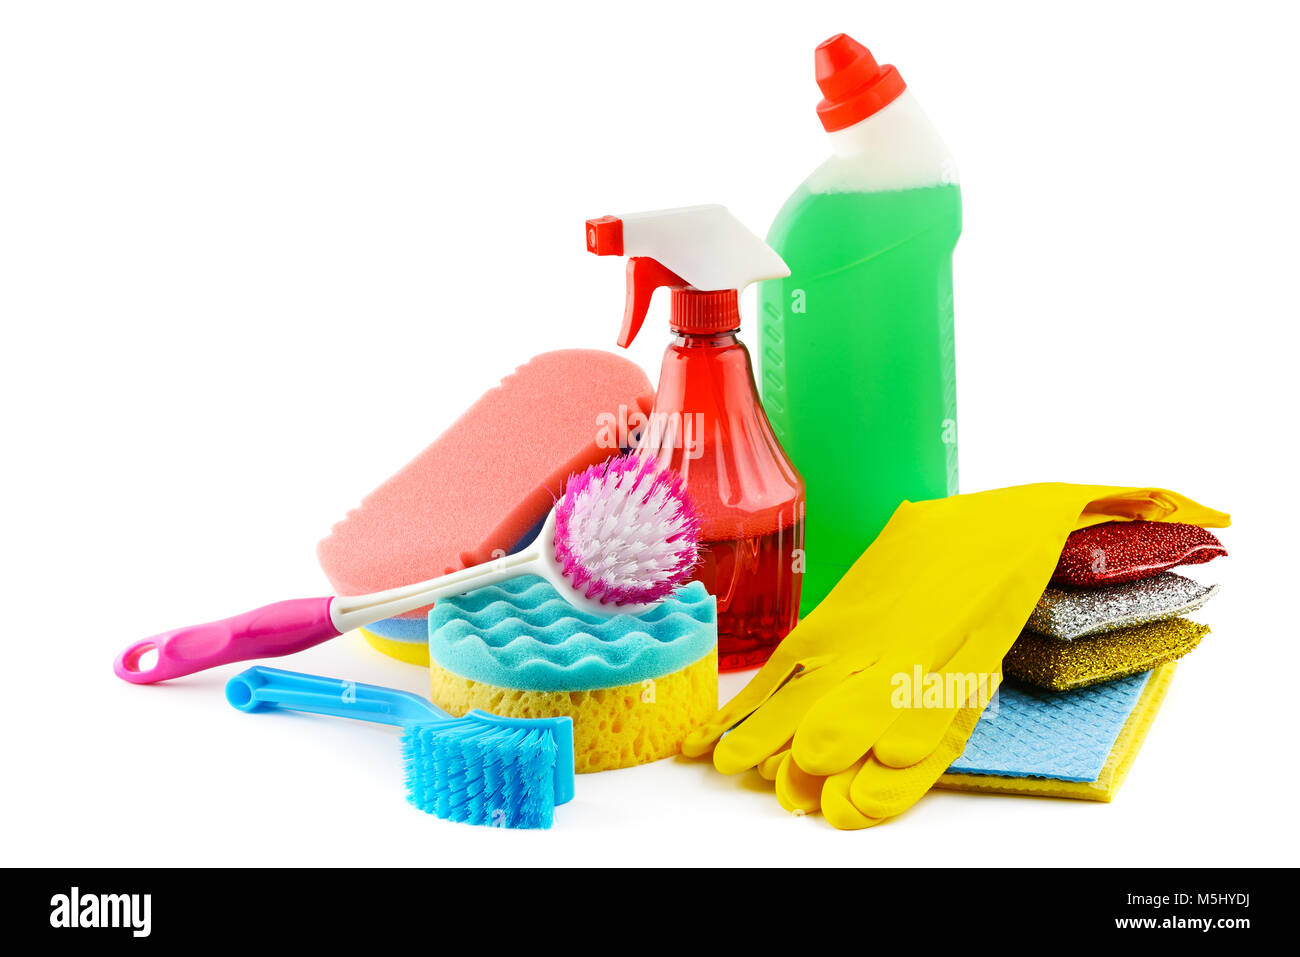 Impostare pulitori isolati su sfondo bianco. Detergente, spugne, spazzola, tovaglioli, guanti di gomma Foto Stock